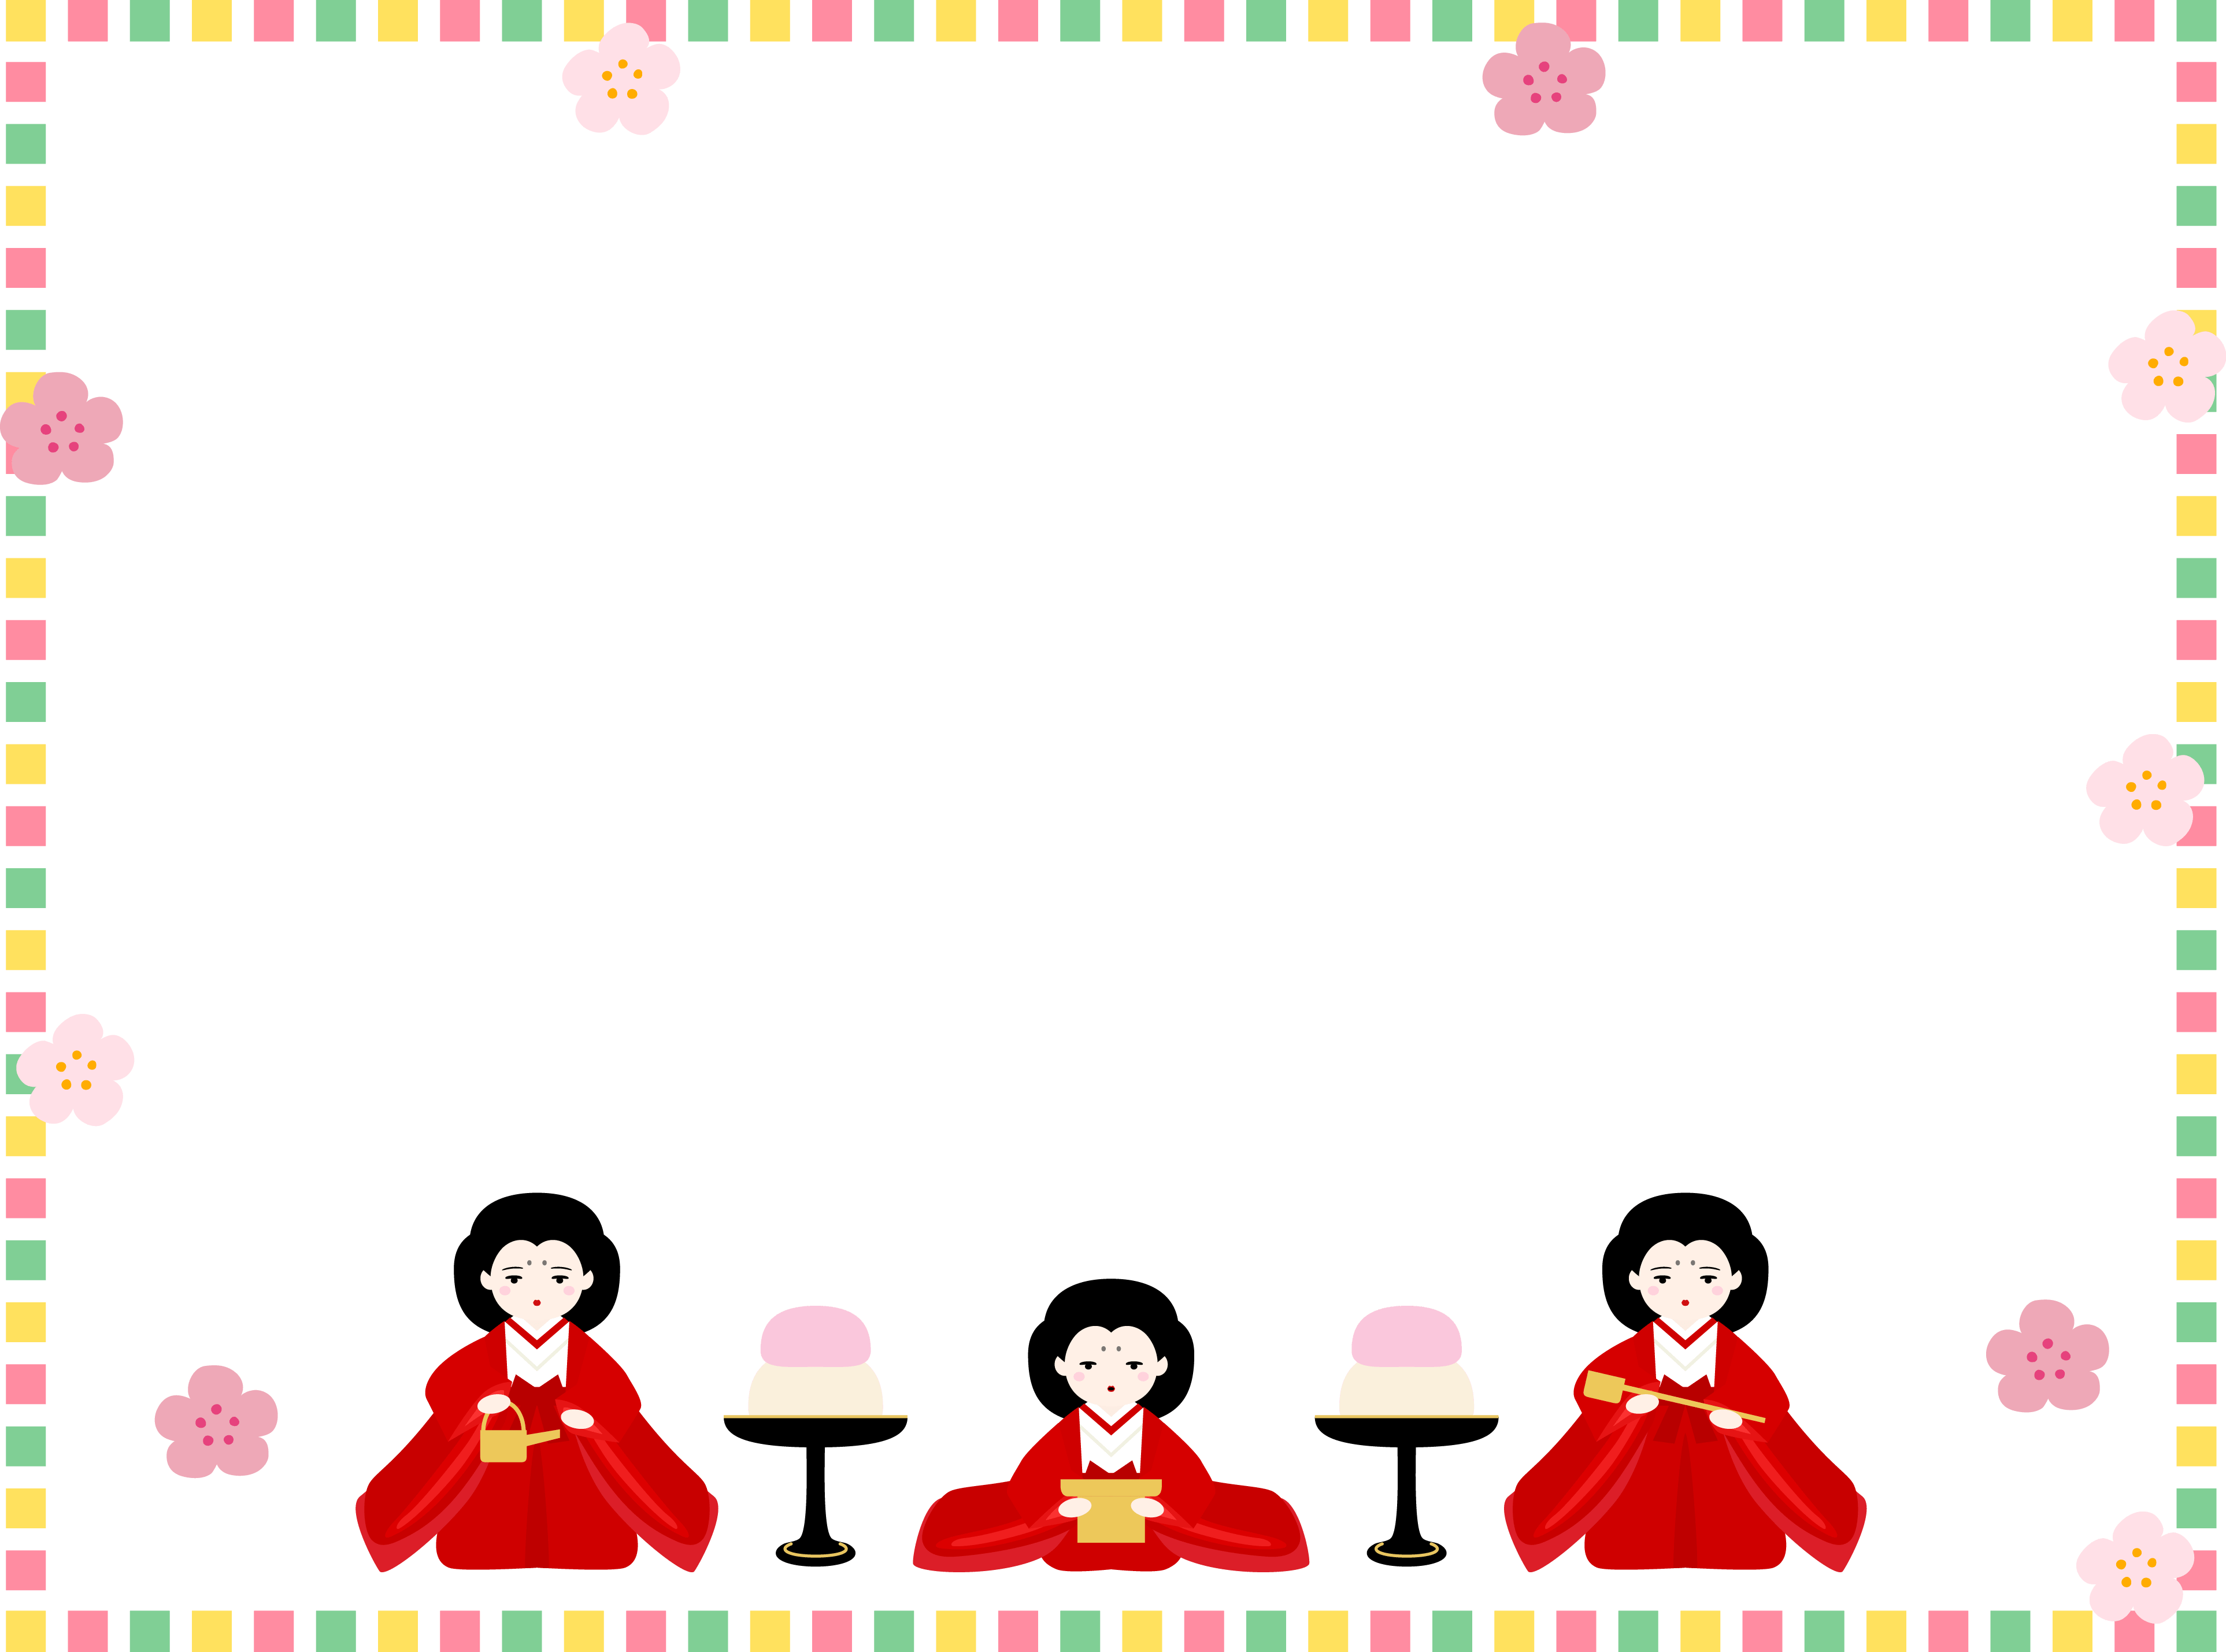 五彩缤纷的四角三人官女的包围女儿节装饰框